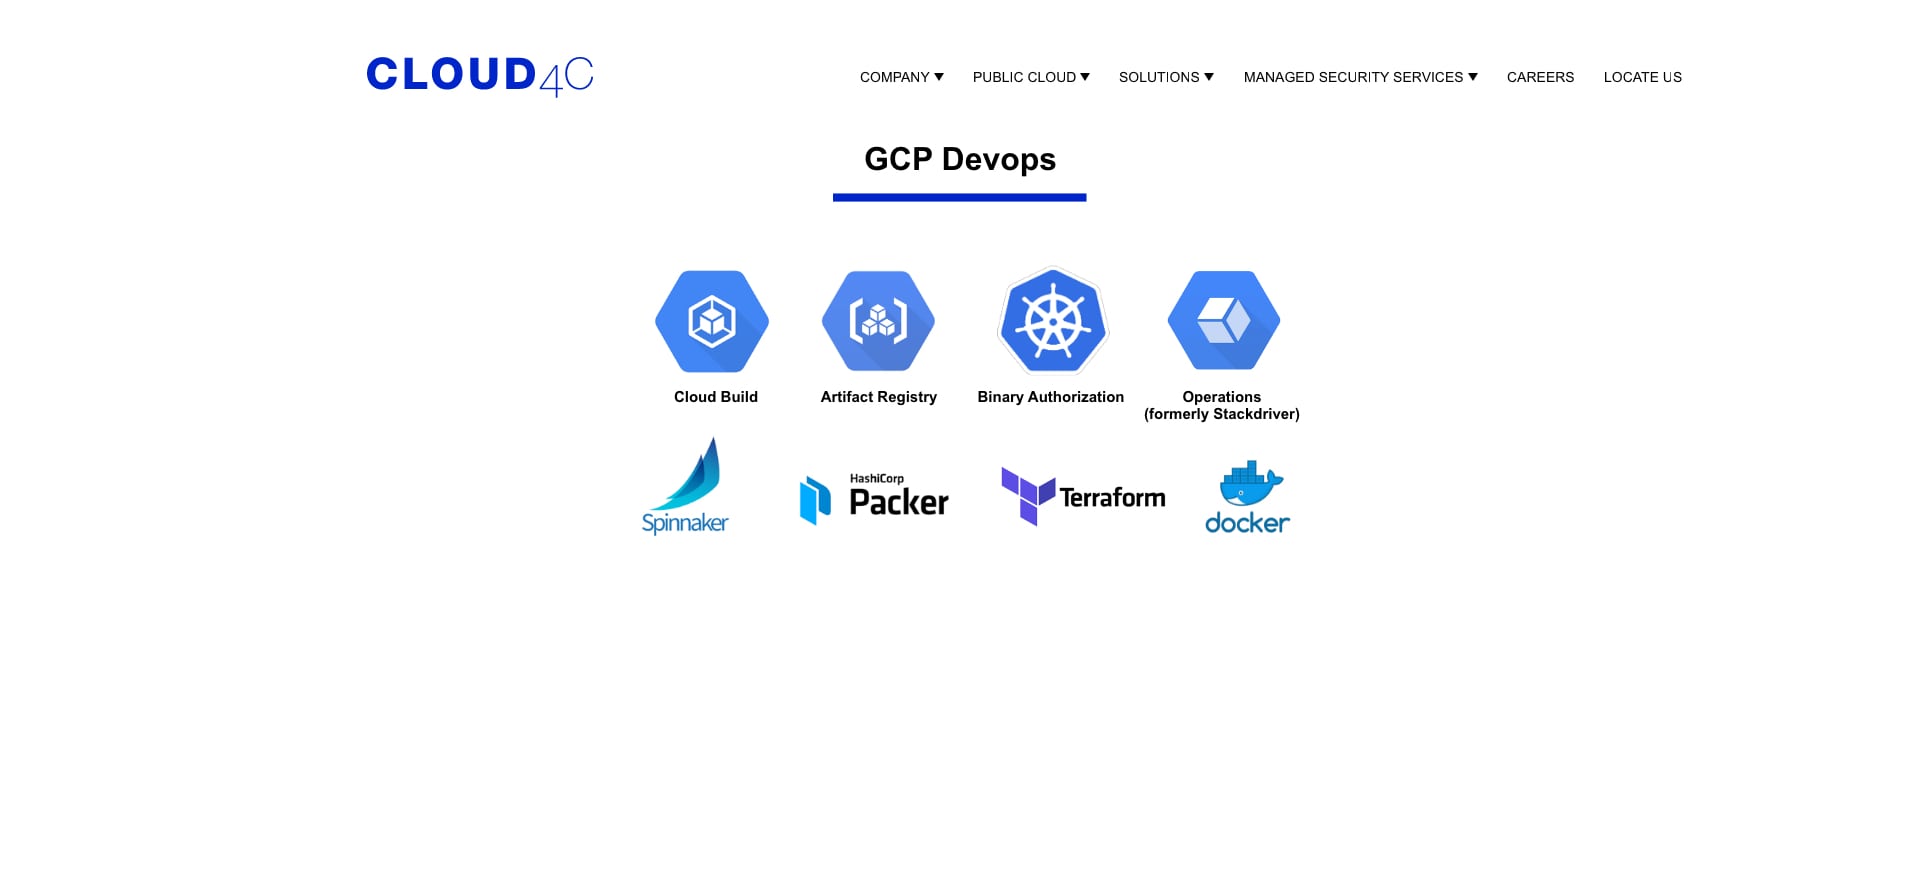 Full Suite of Cloud4C DevOps Services